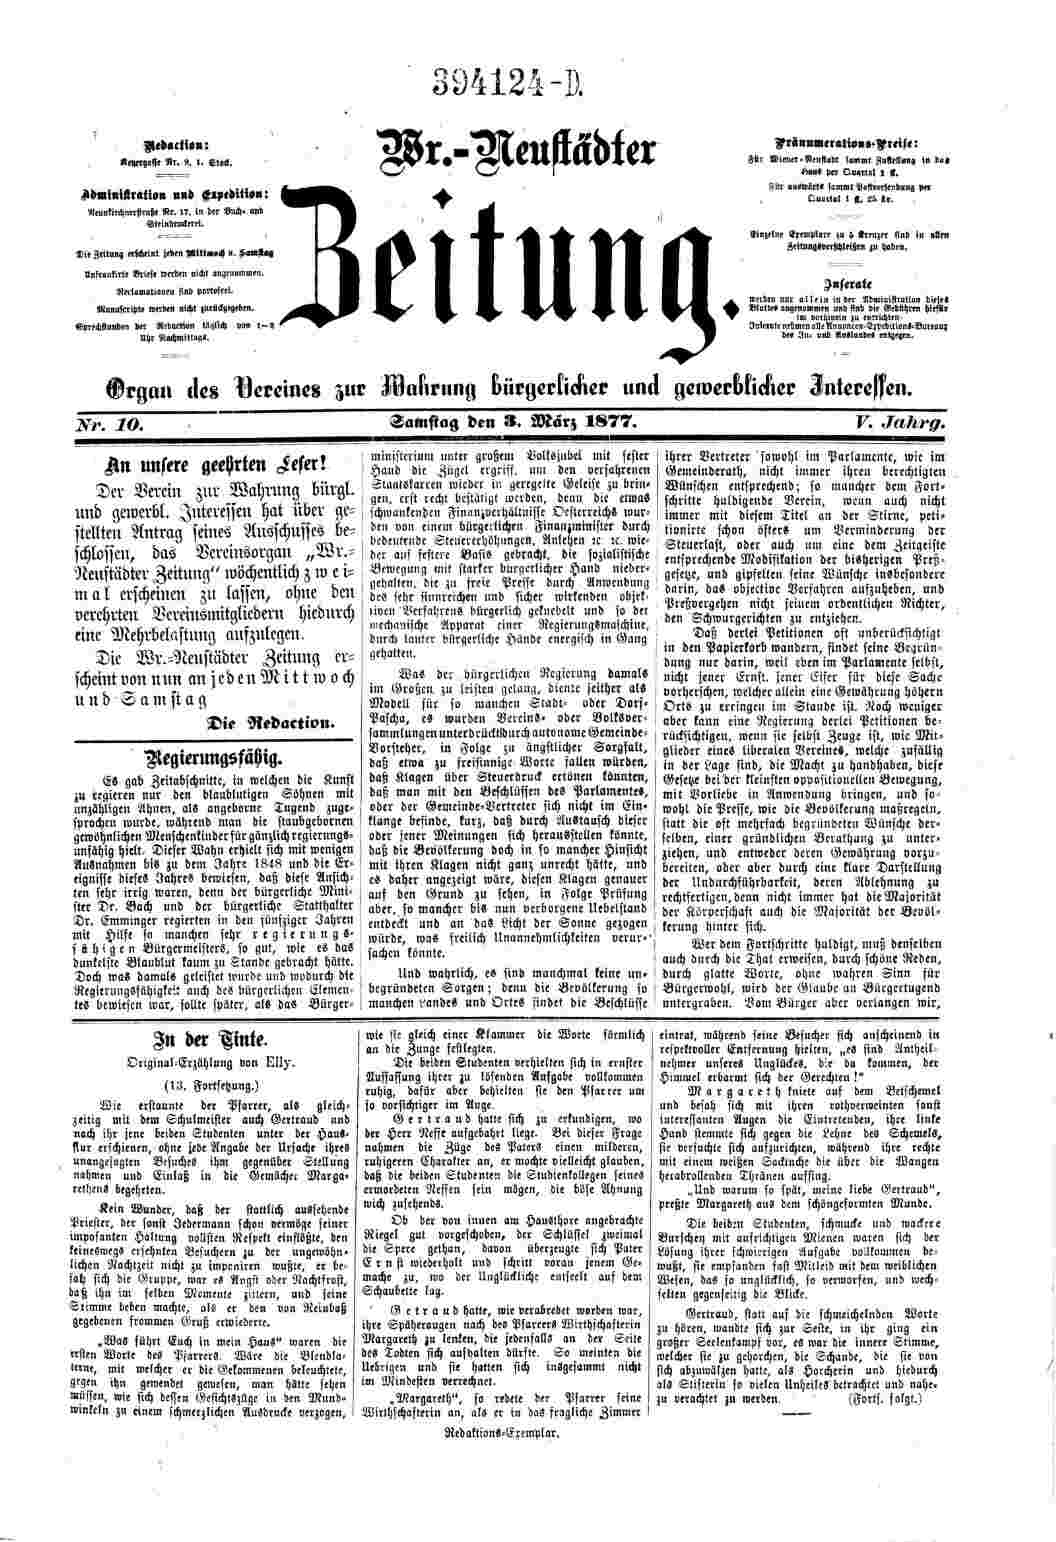 Wiener-Neustädter Zeitung, 3.3.1877, S.1, ANNO/ÖNB